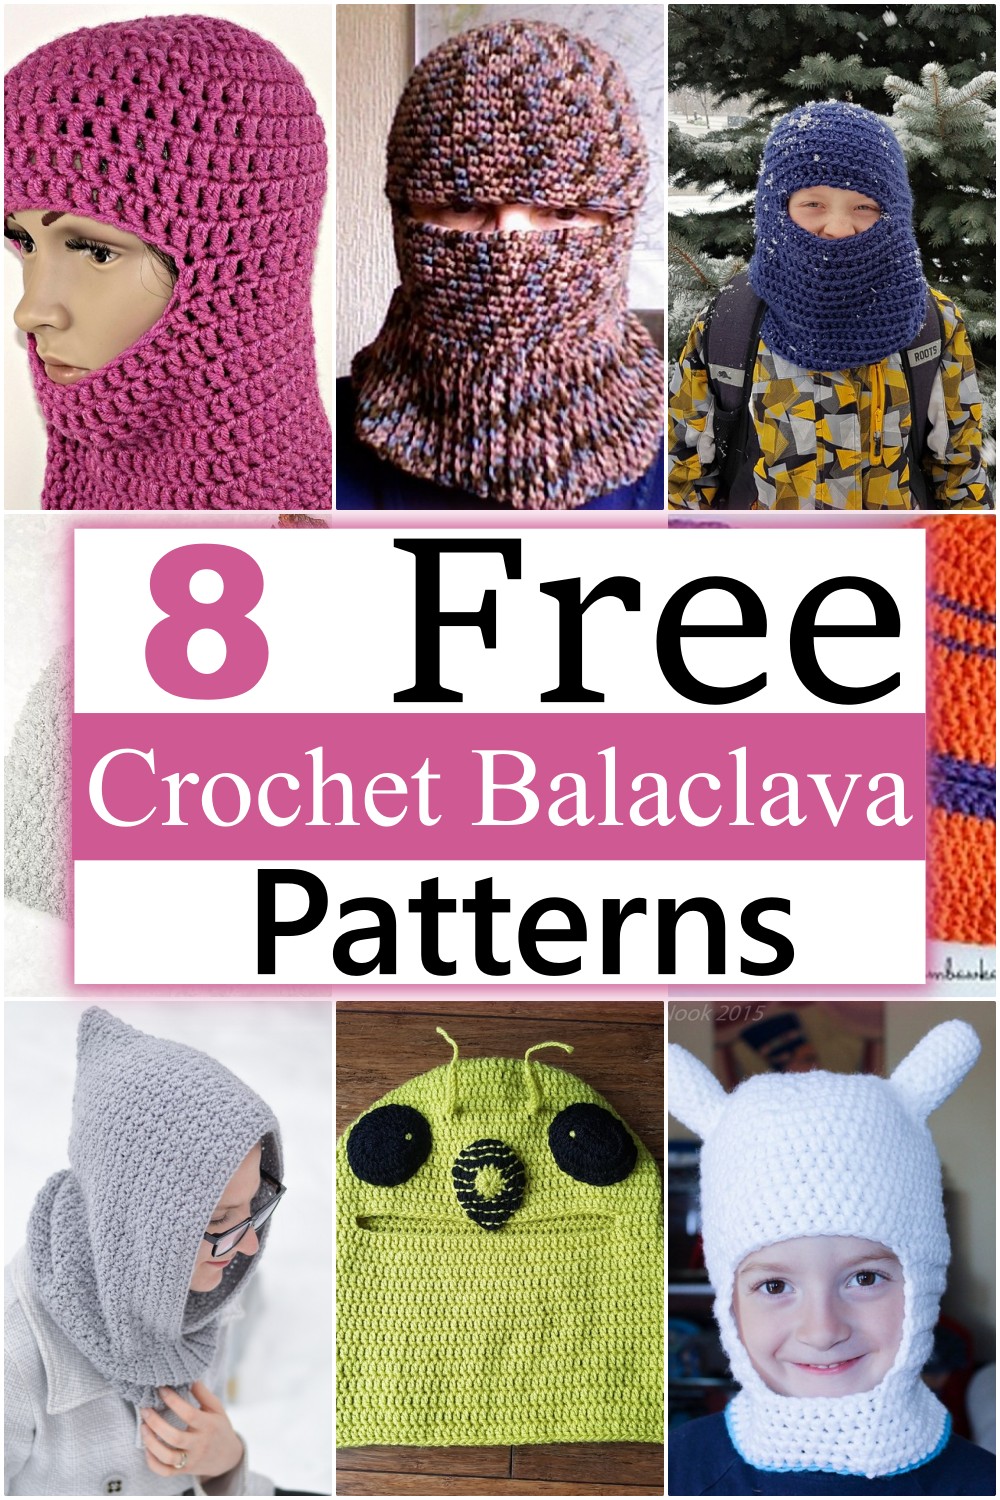 Crochet Balaclava Patterns